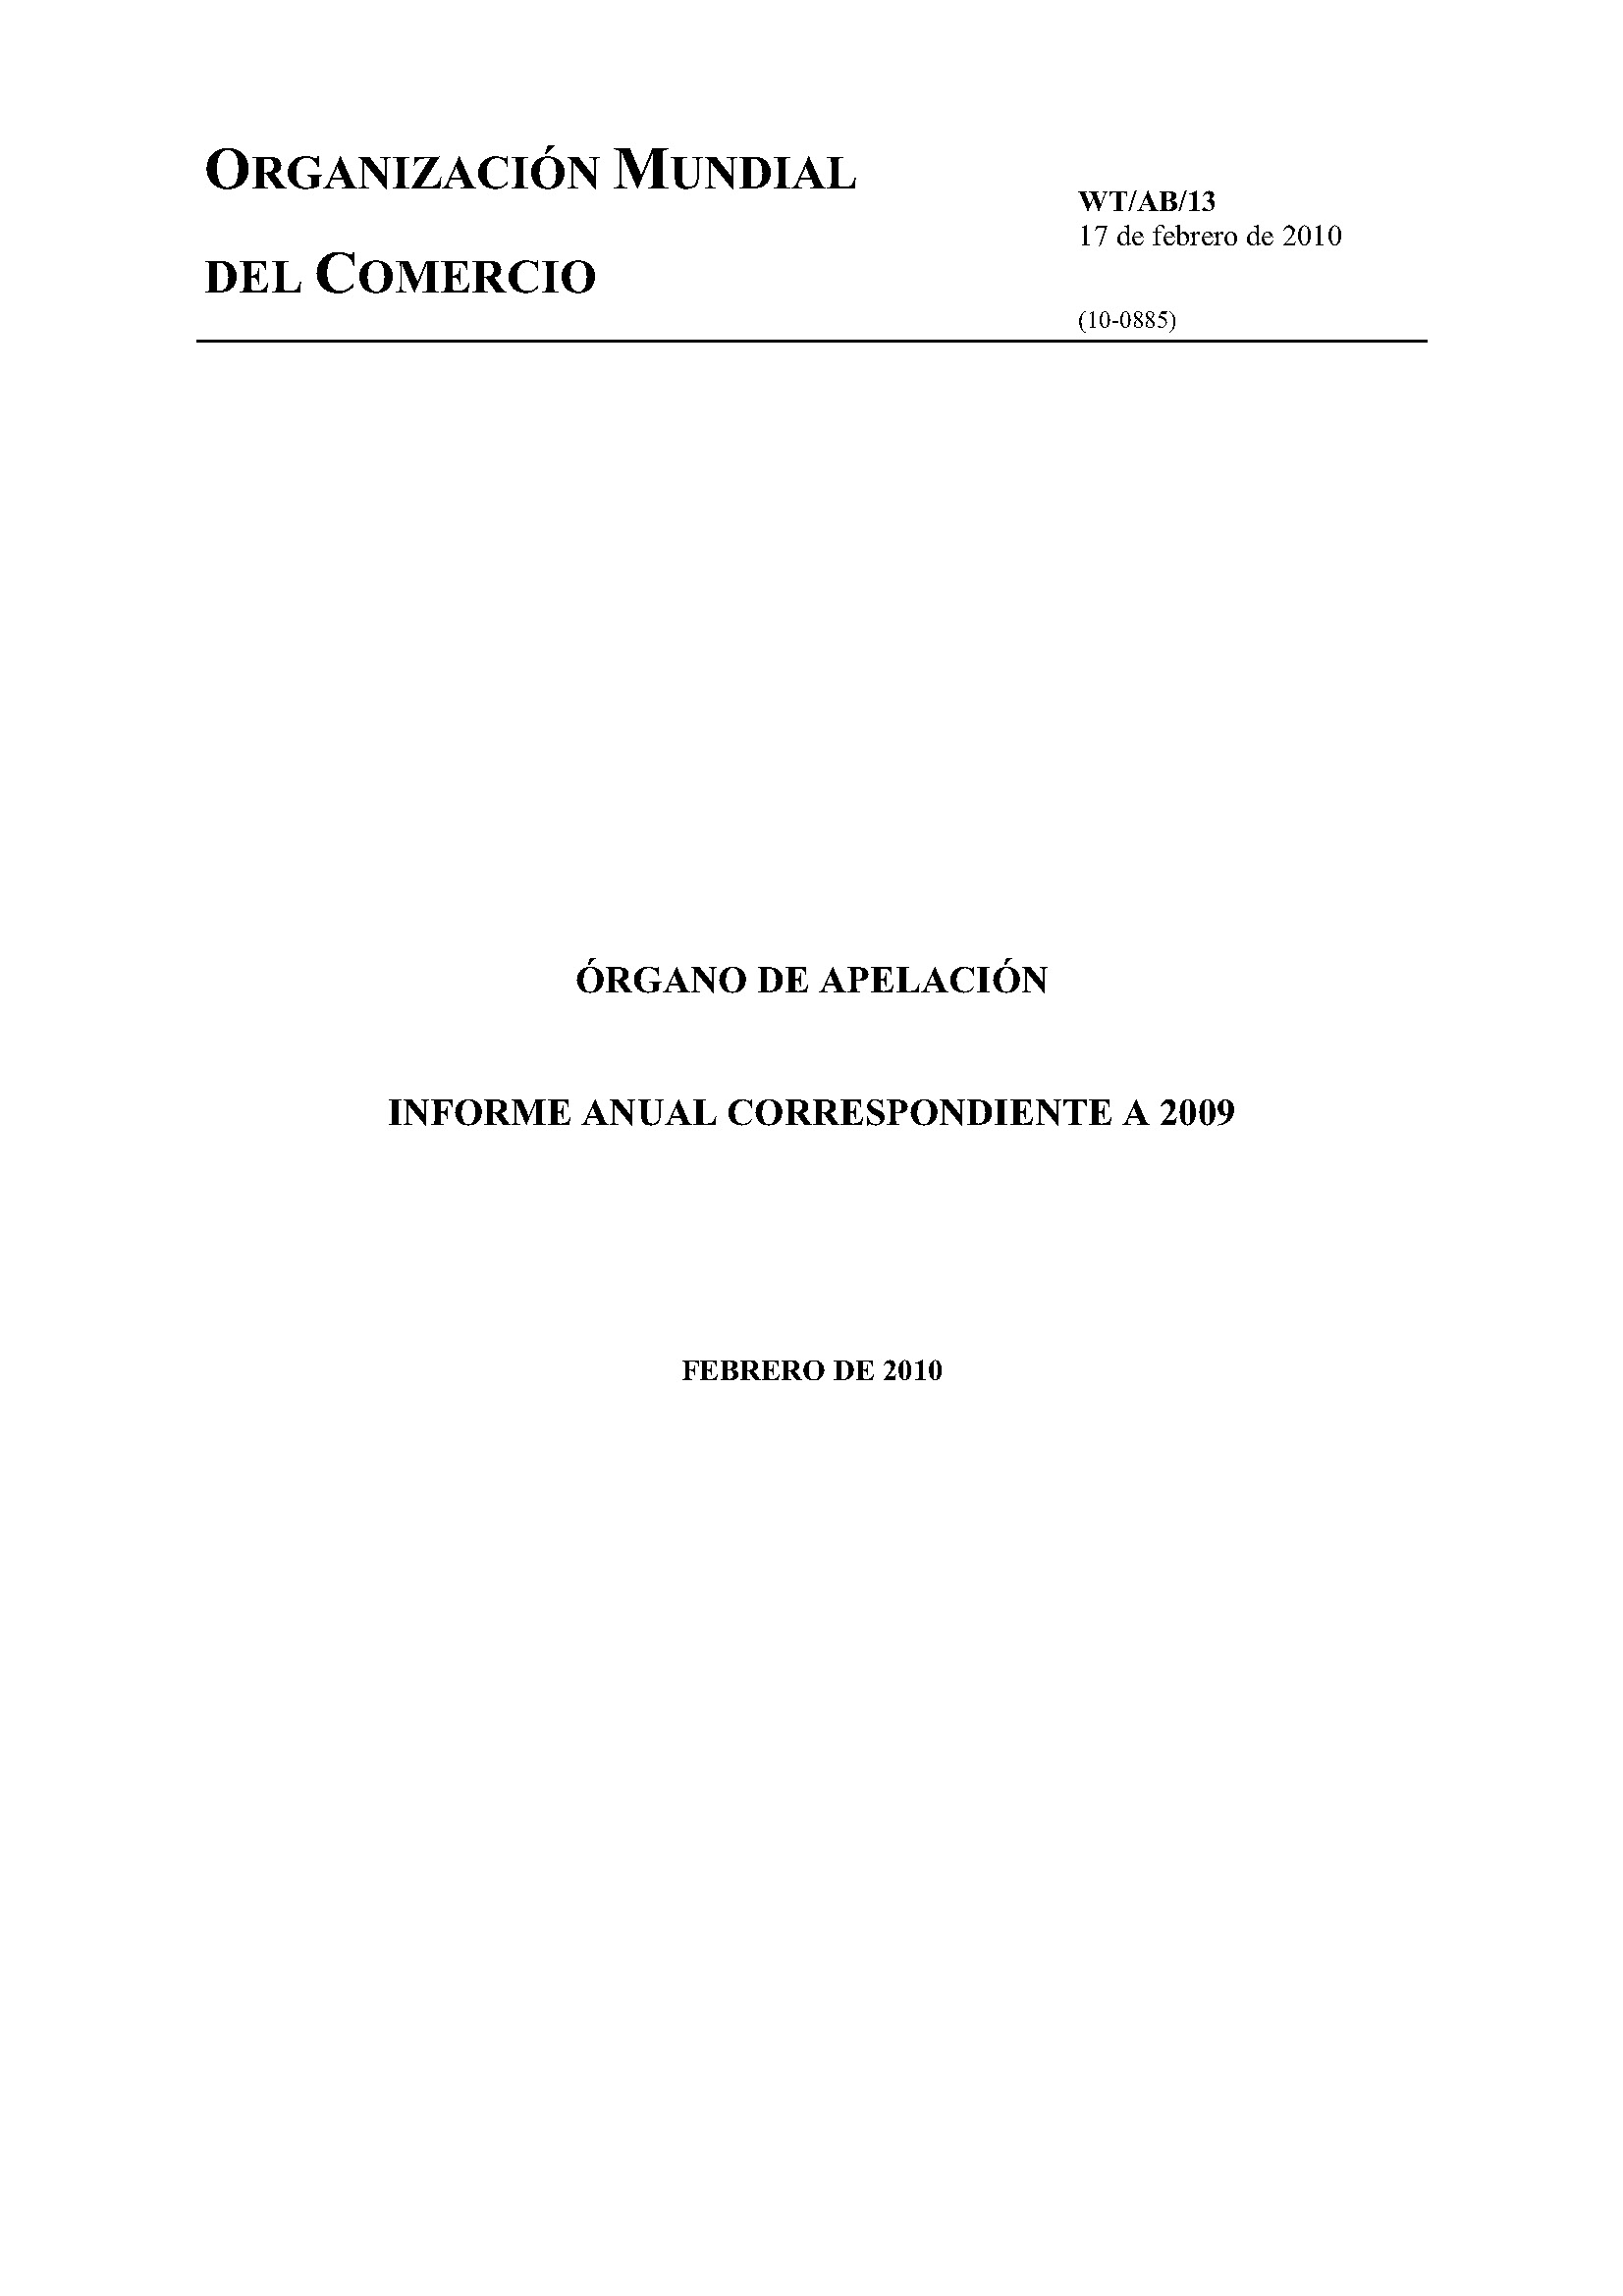 image of Informe anual del ógarno de opelación por 2009